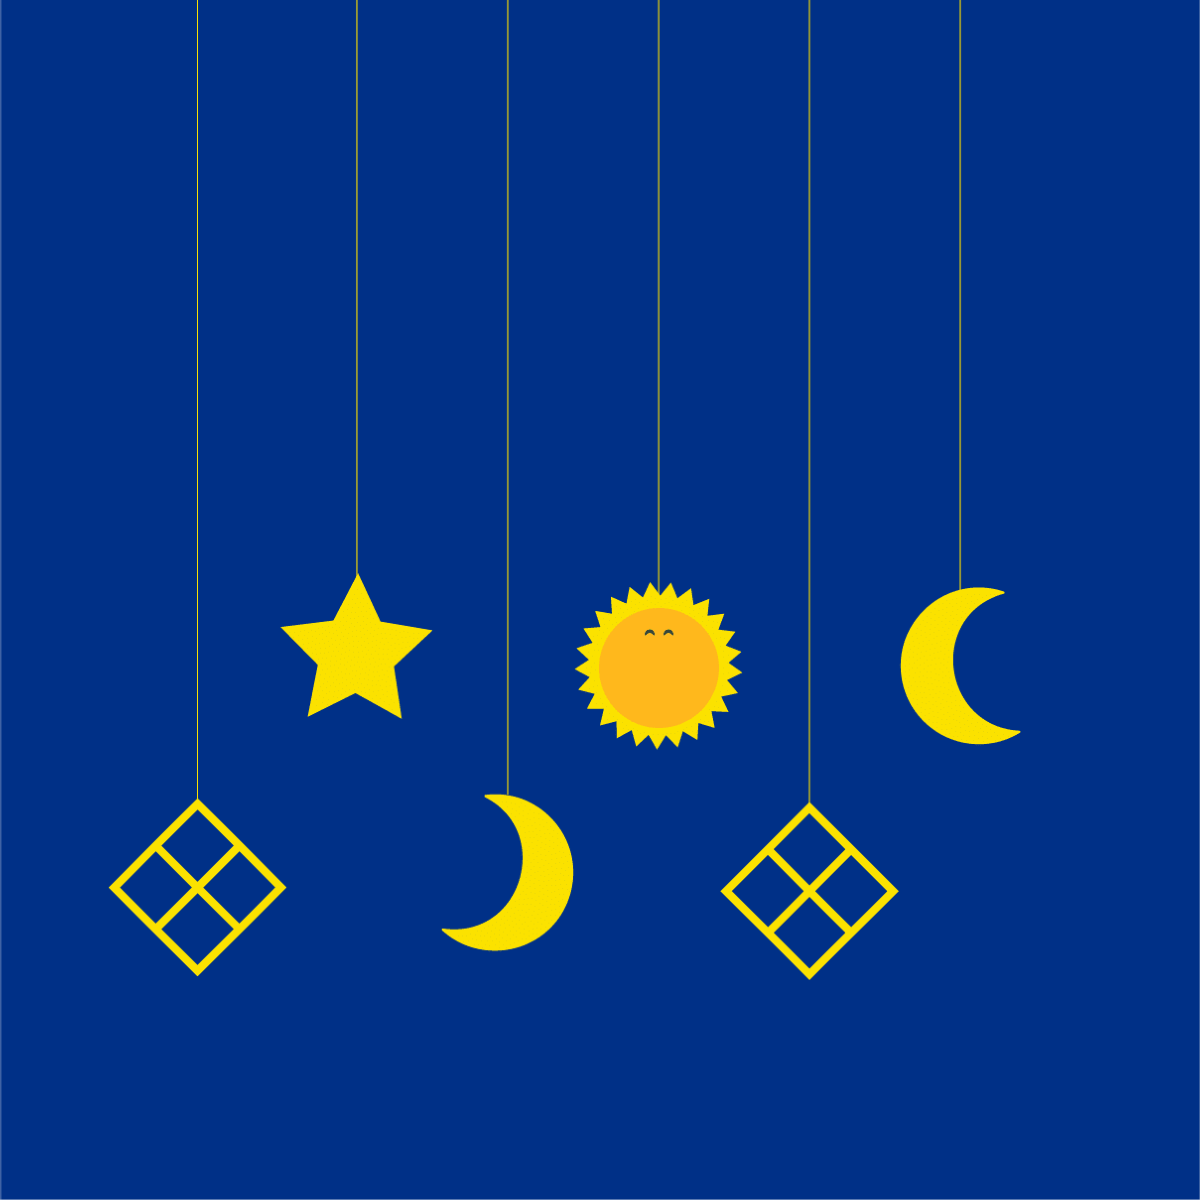 YBH image of Sunny amongst religious symbols on a blue background